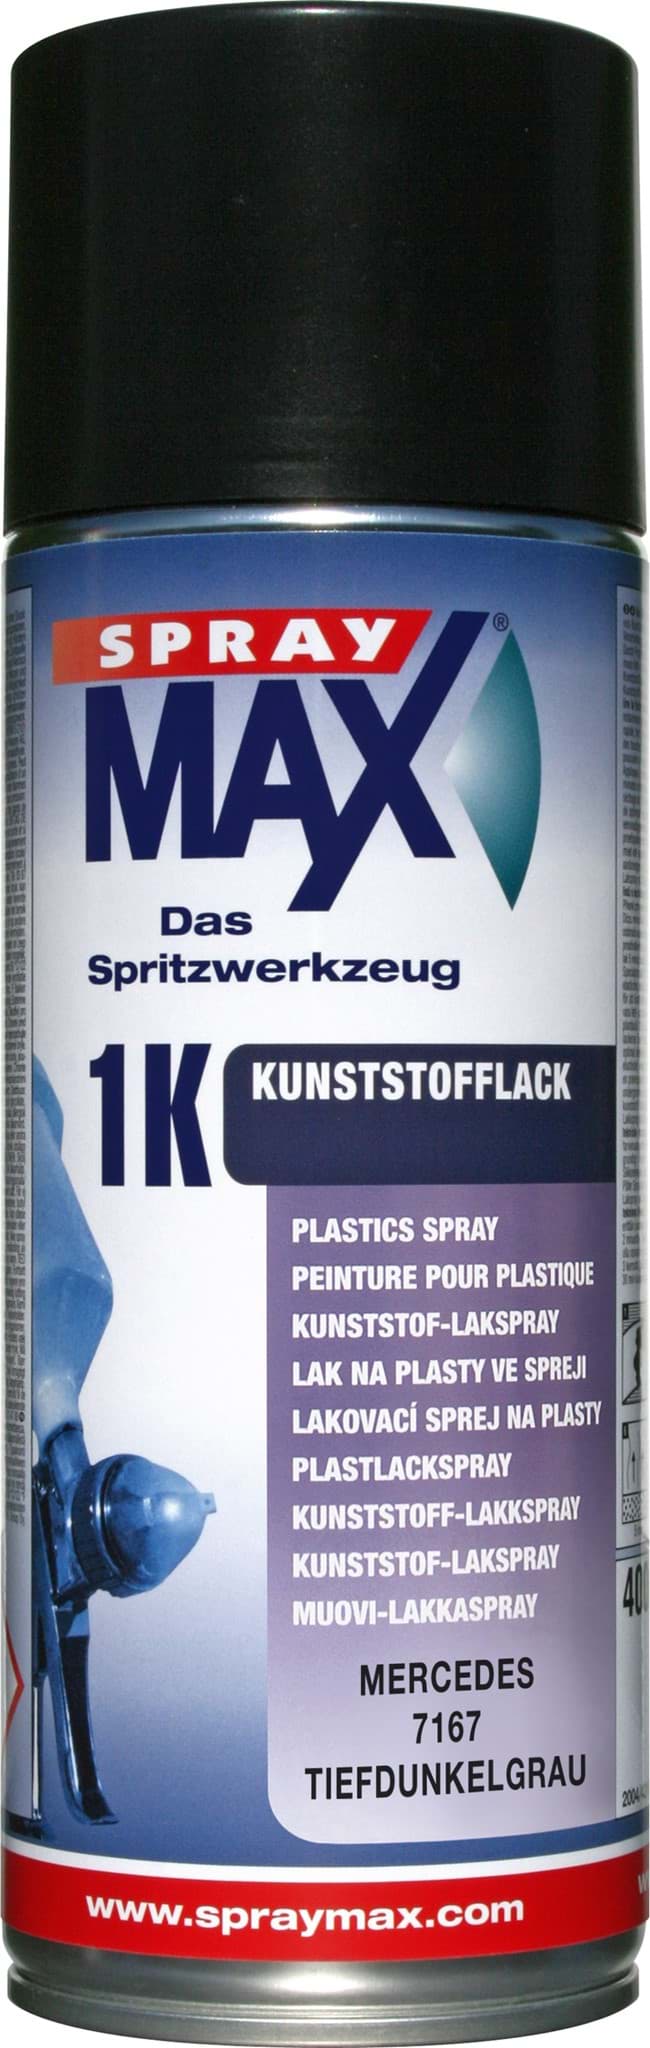 SprayMax 1K Kunststofflack Mercedes 7167 tiefdunkelgrau resmi